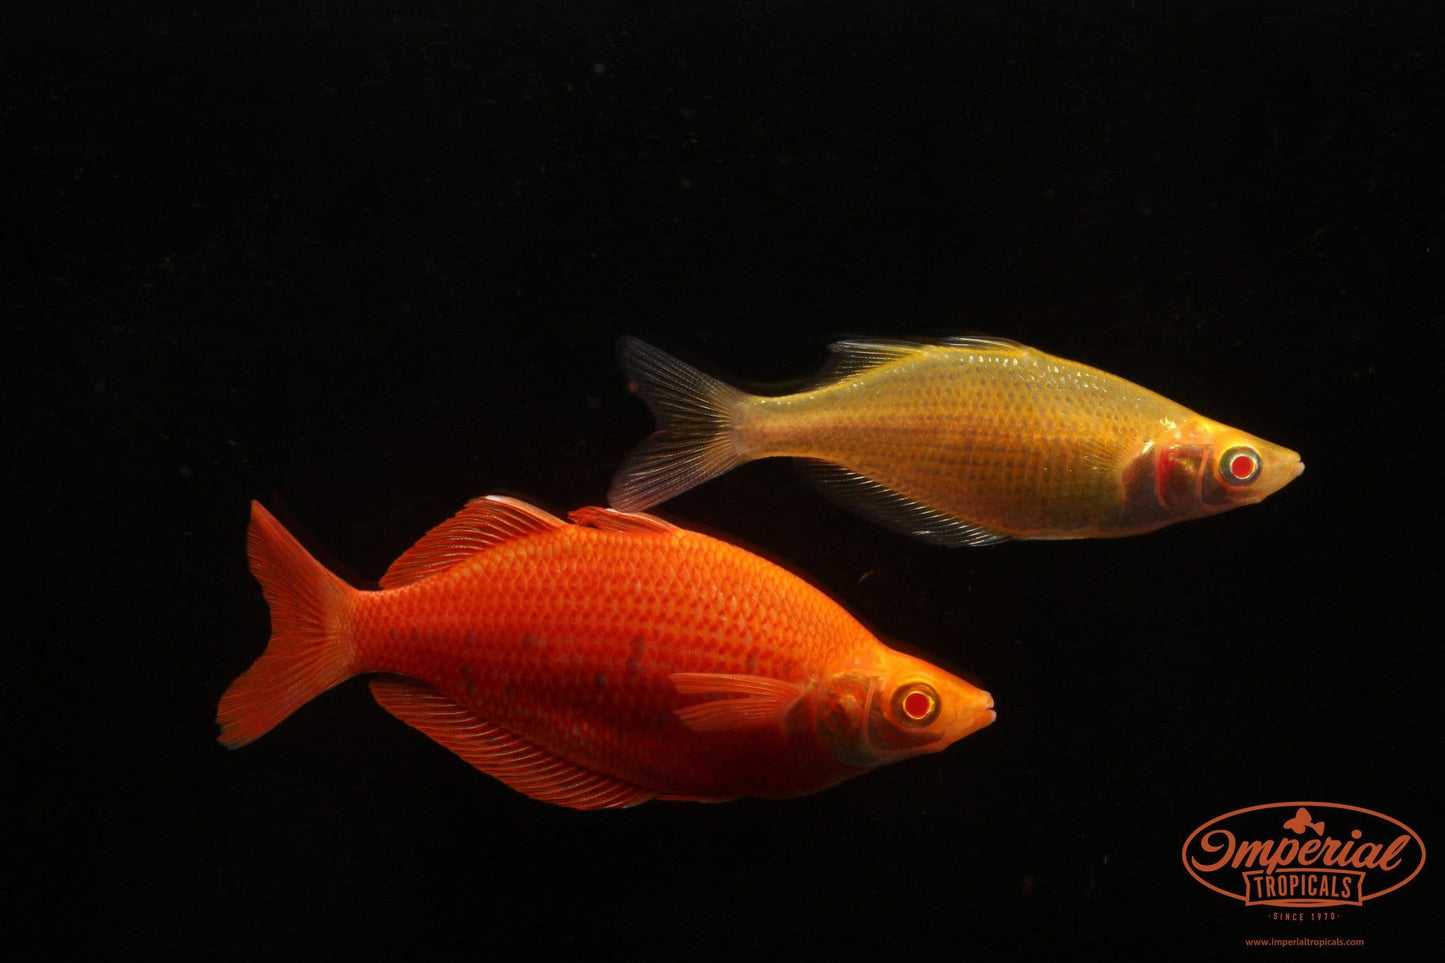 Albino Millennium Rainbowfish (Glossolepis pseudoincisus) - Imperial Tropicals